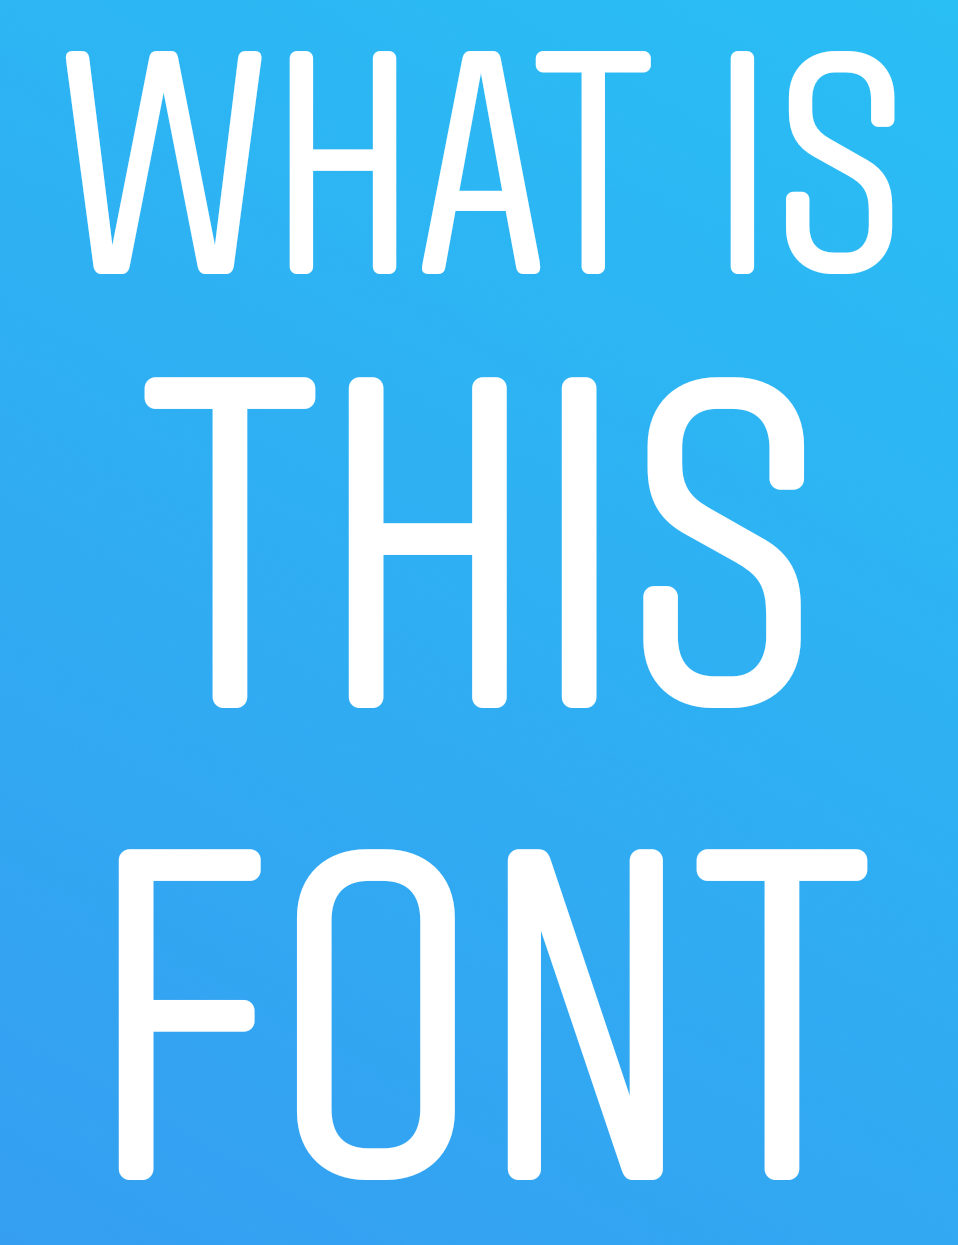 Thay đổi trang trí trên trang cá nhân Instagram của bạn với New Font Options for Instagram Stories từ dafont.com forum. Với những lựa chọn Fonts mới, bạn có thể thể hiện phong cách riêng của mình và tạo ra những câu chuyện độc đáo và thu hút sự chú ý từ khán giả. Bạn sẽ bất ngờ với hiệu quả mà Font mới tạo ra cho nội dung của bạn.